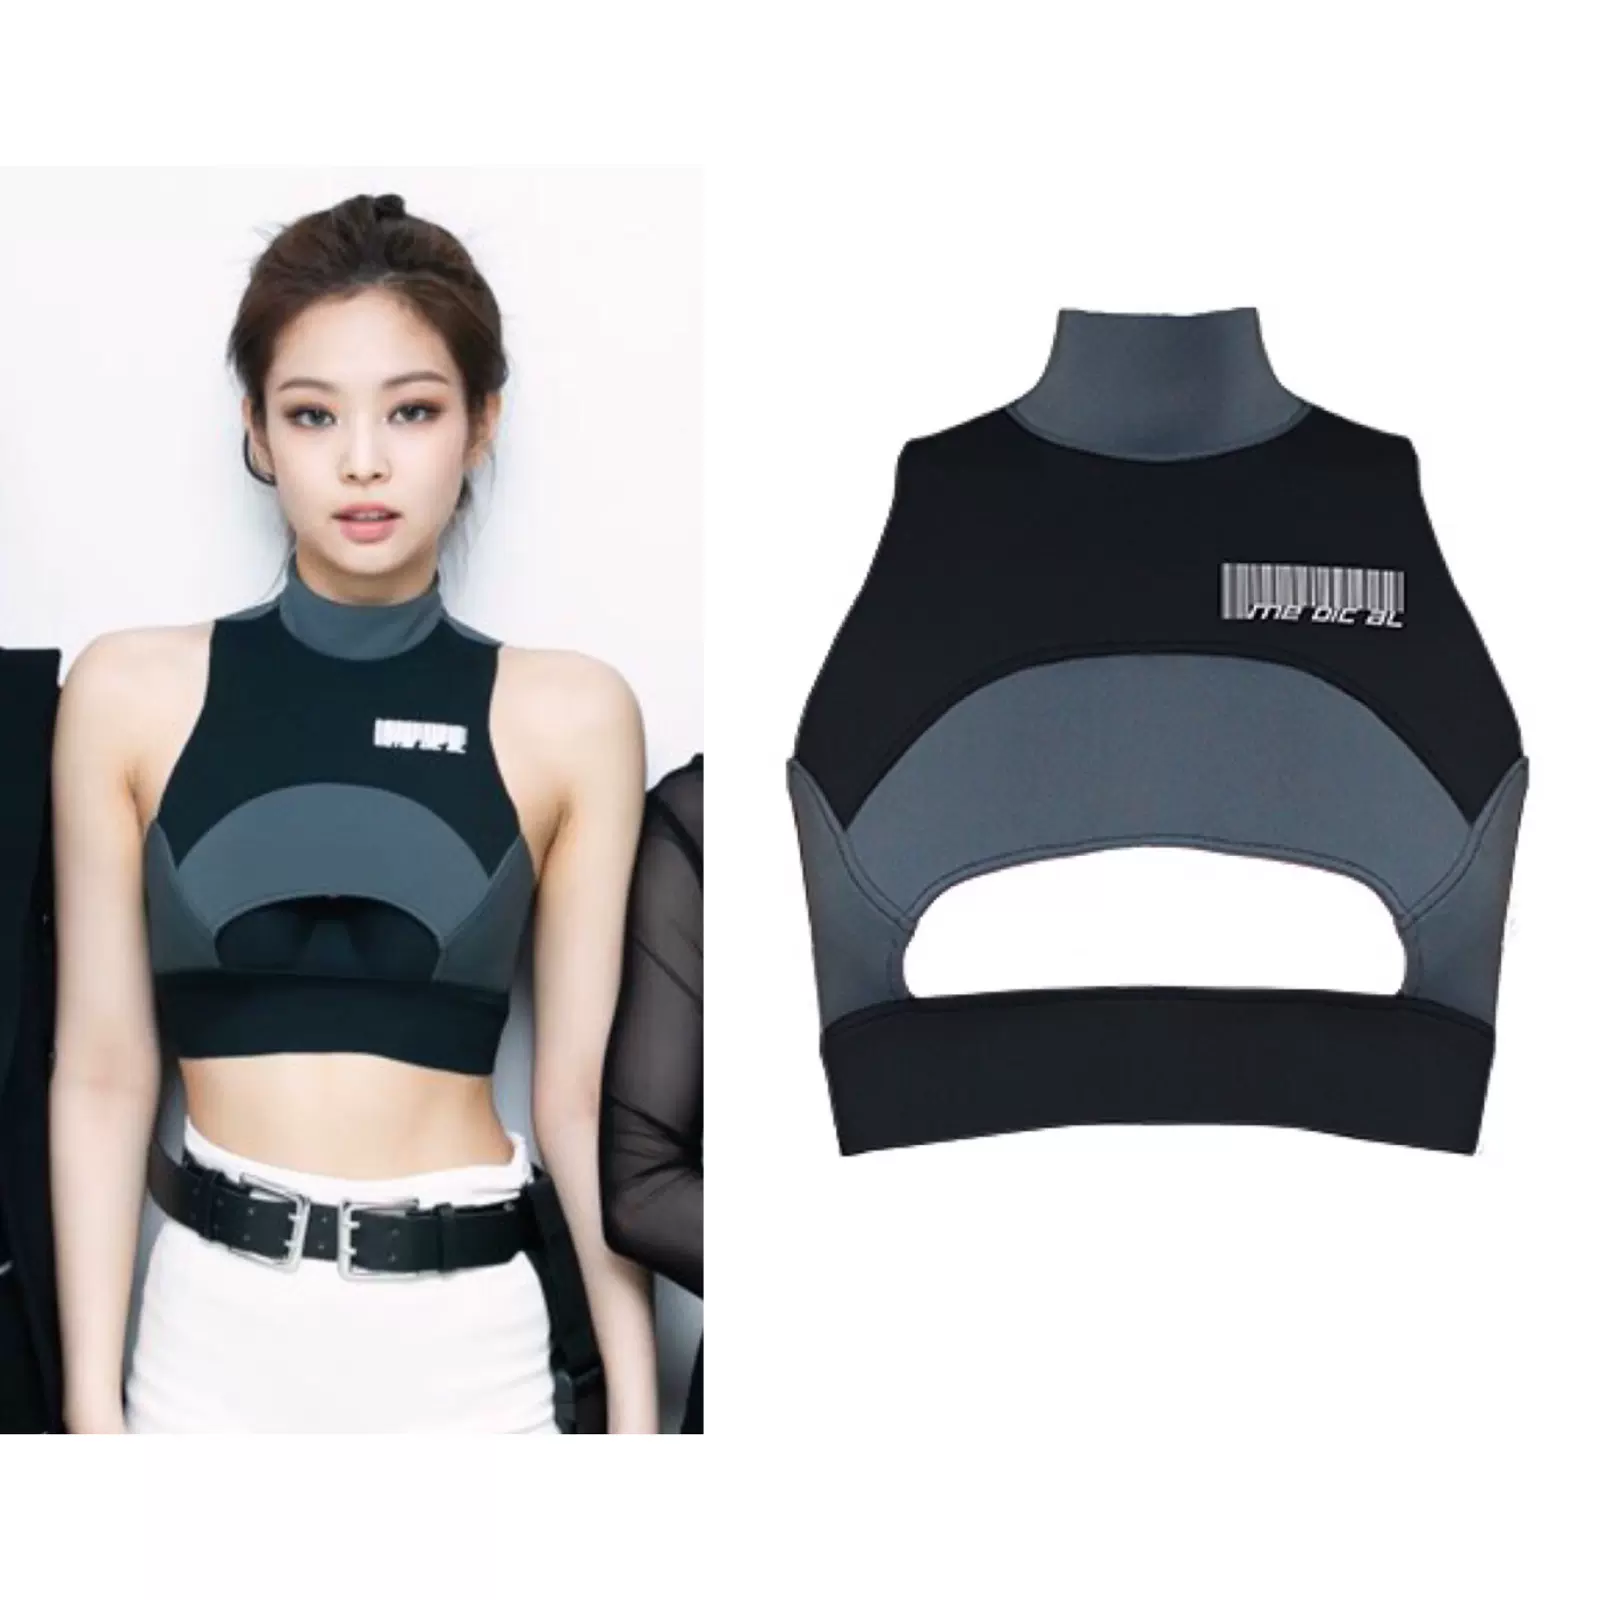 售完欣赏Me Dic Al运动上衣Blackpink Jennie同款-Taobao